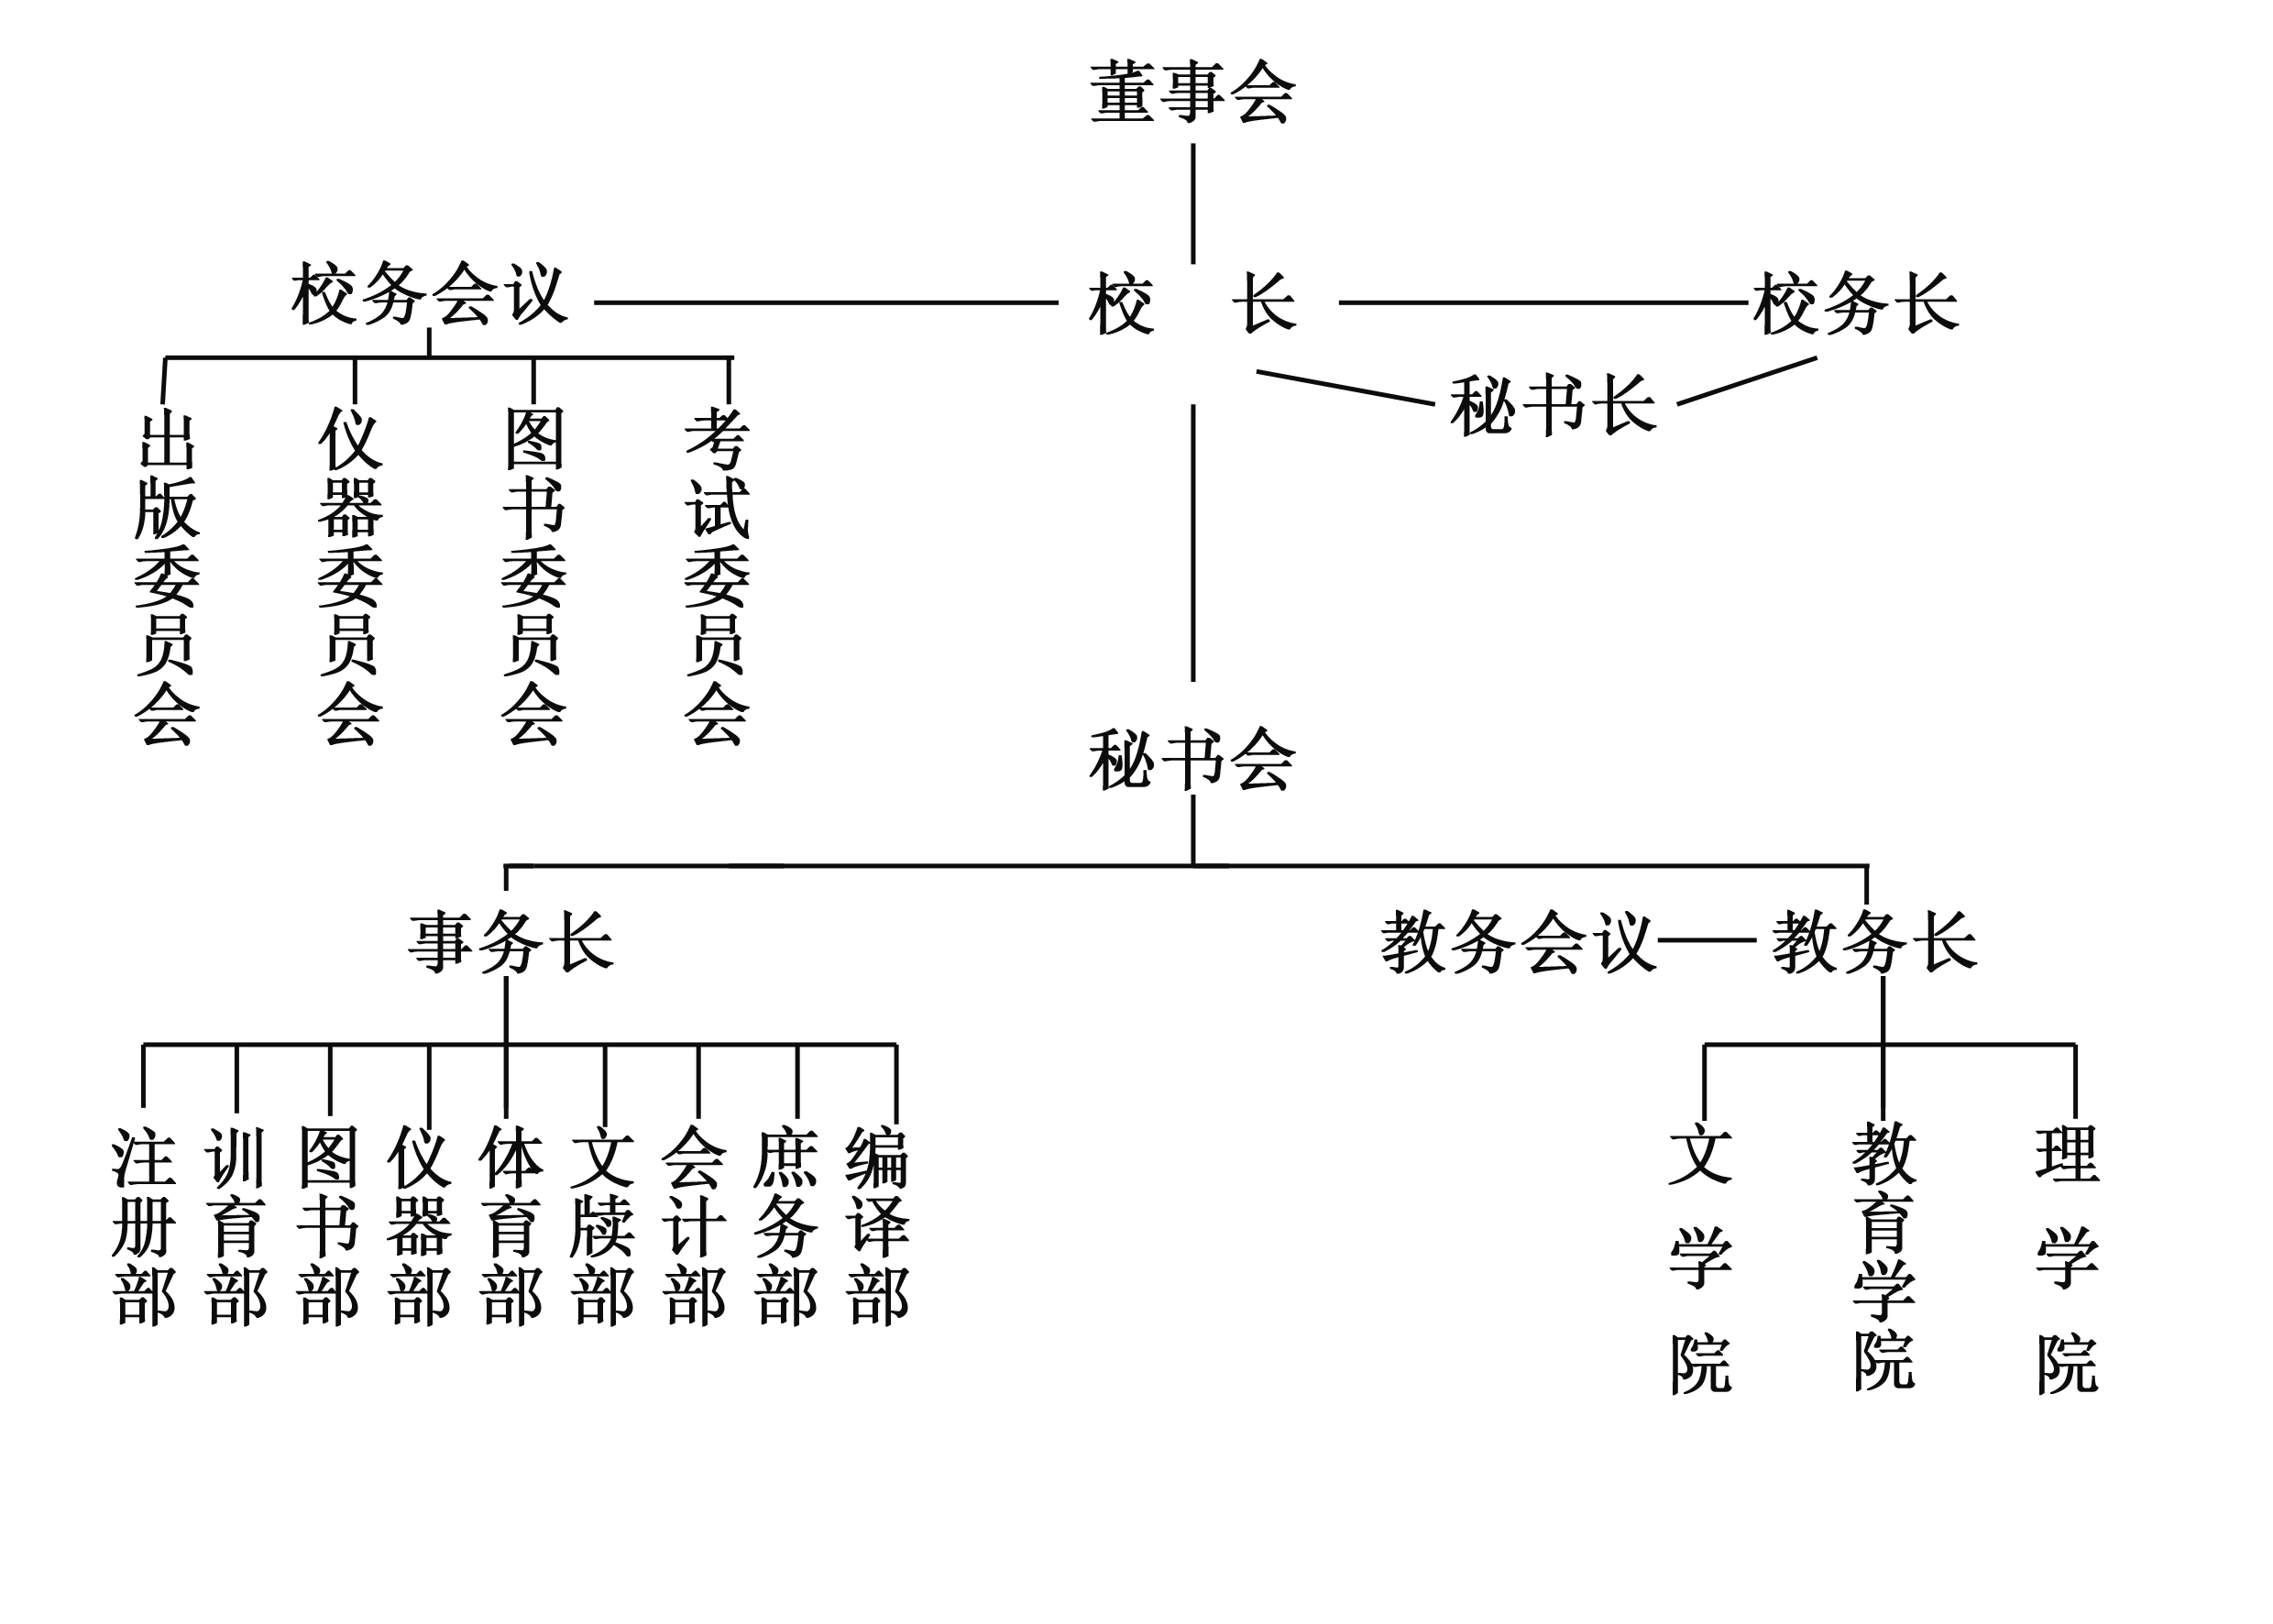 A2-05,1929年辅仁大学组织系统表.jpg